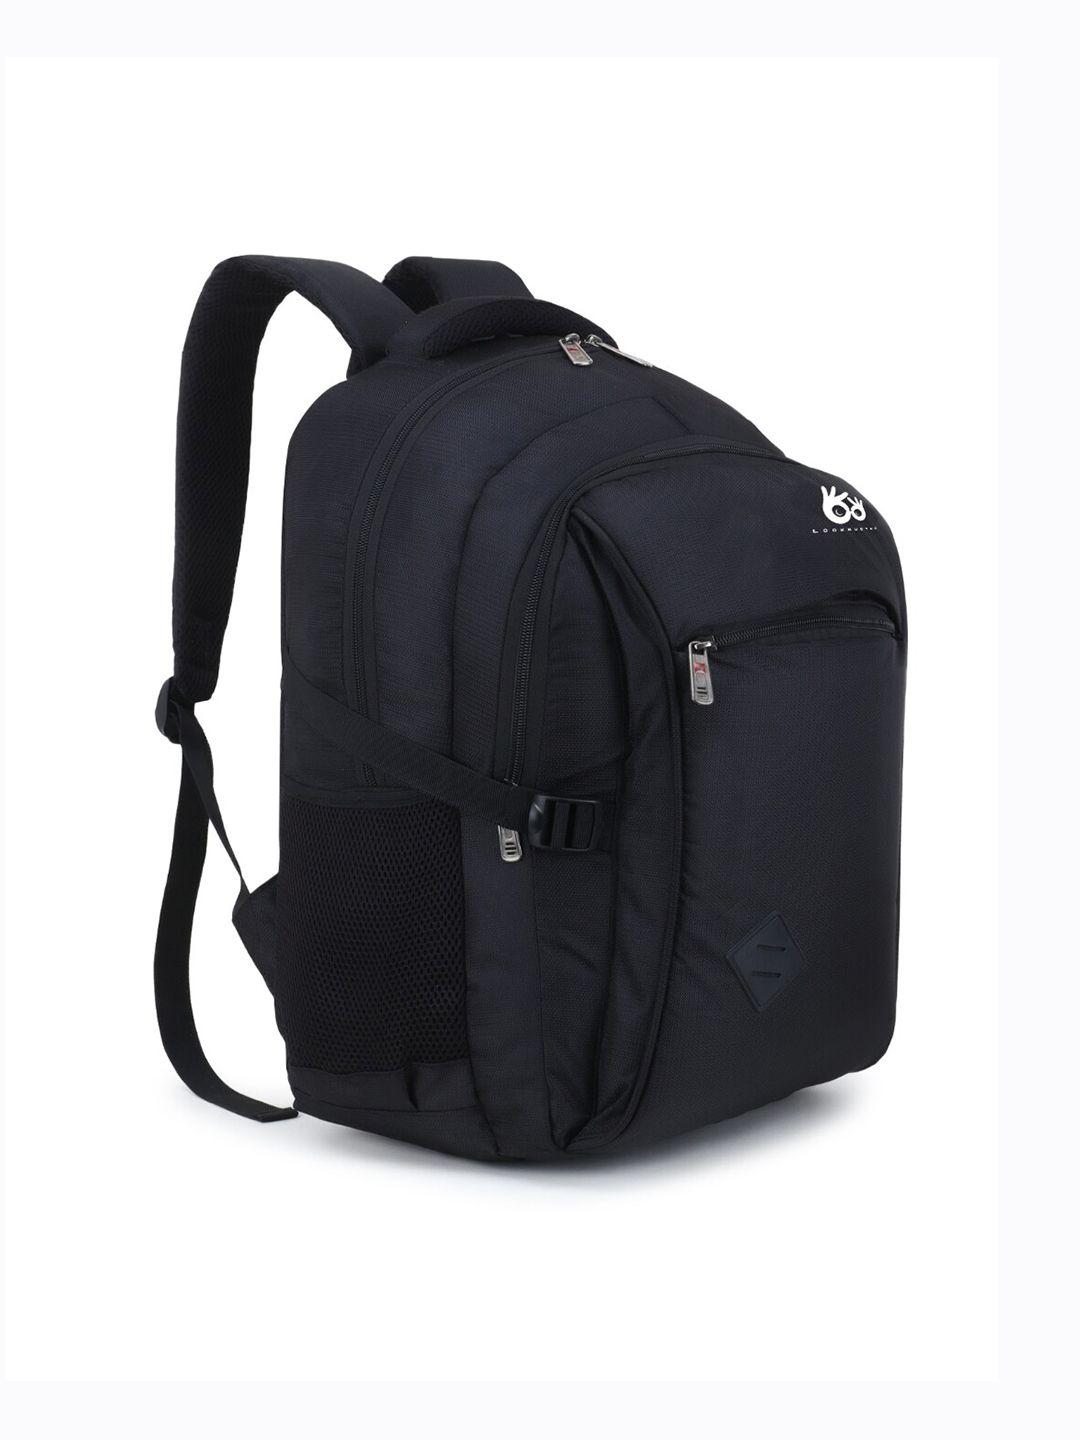 lookmuster unisex black waterproof laptop backpack